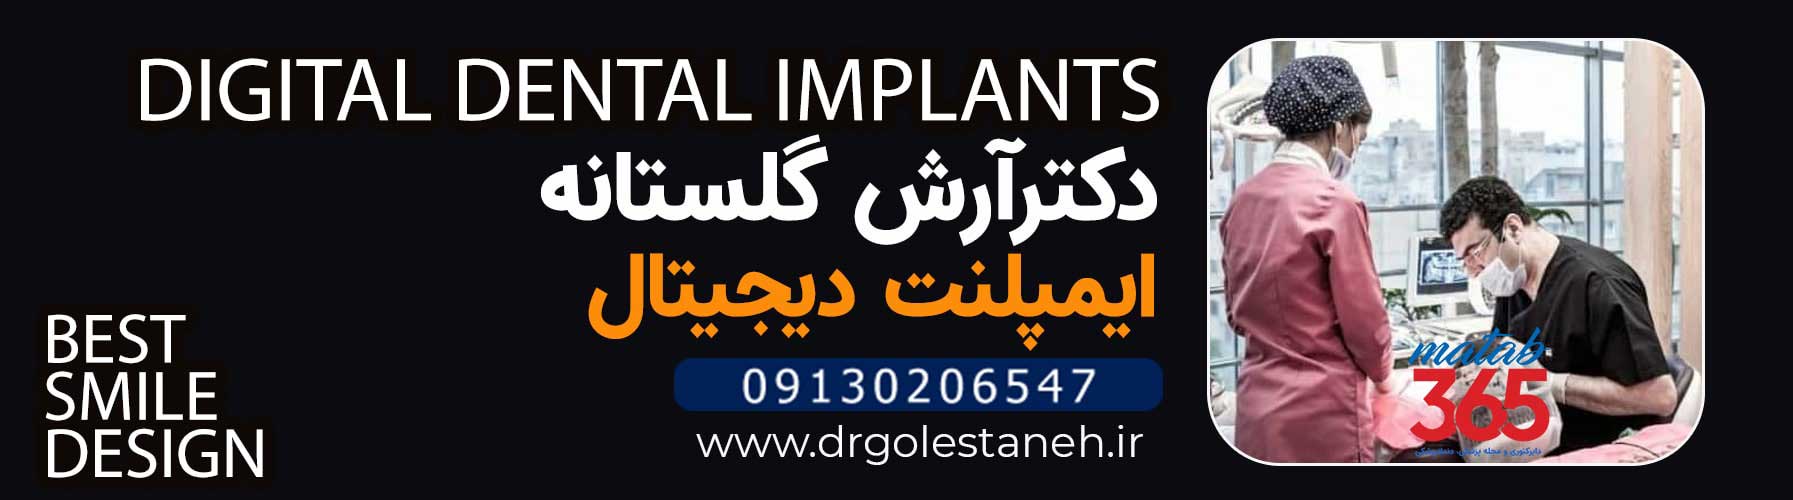 دکتر آرش گلستانه | متخصص ایمپلنت و جراحی فک در اصفهان ارائه دهنده ایمپلنت دیجیتال